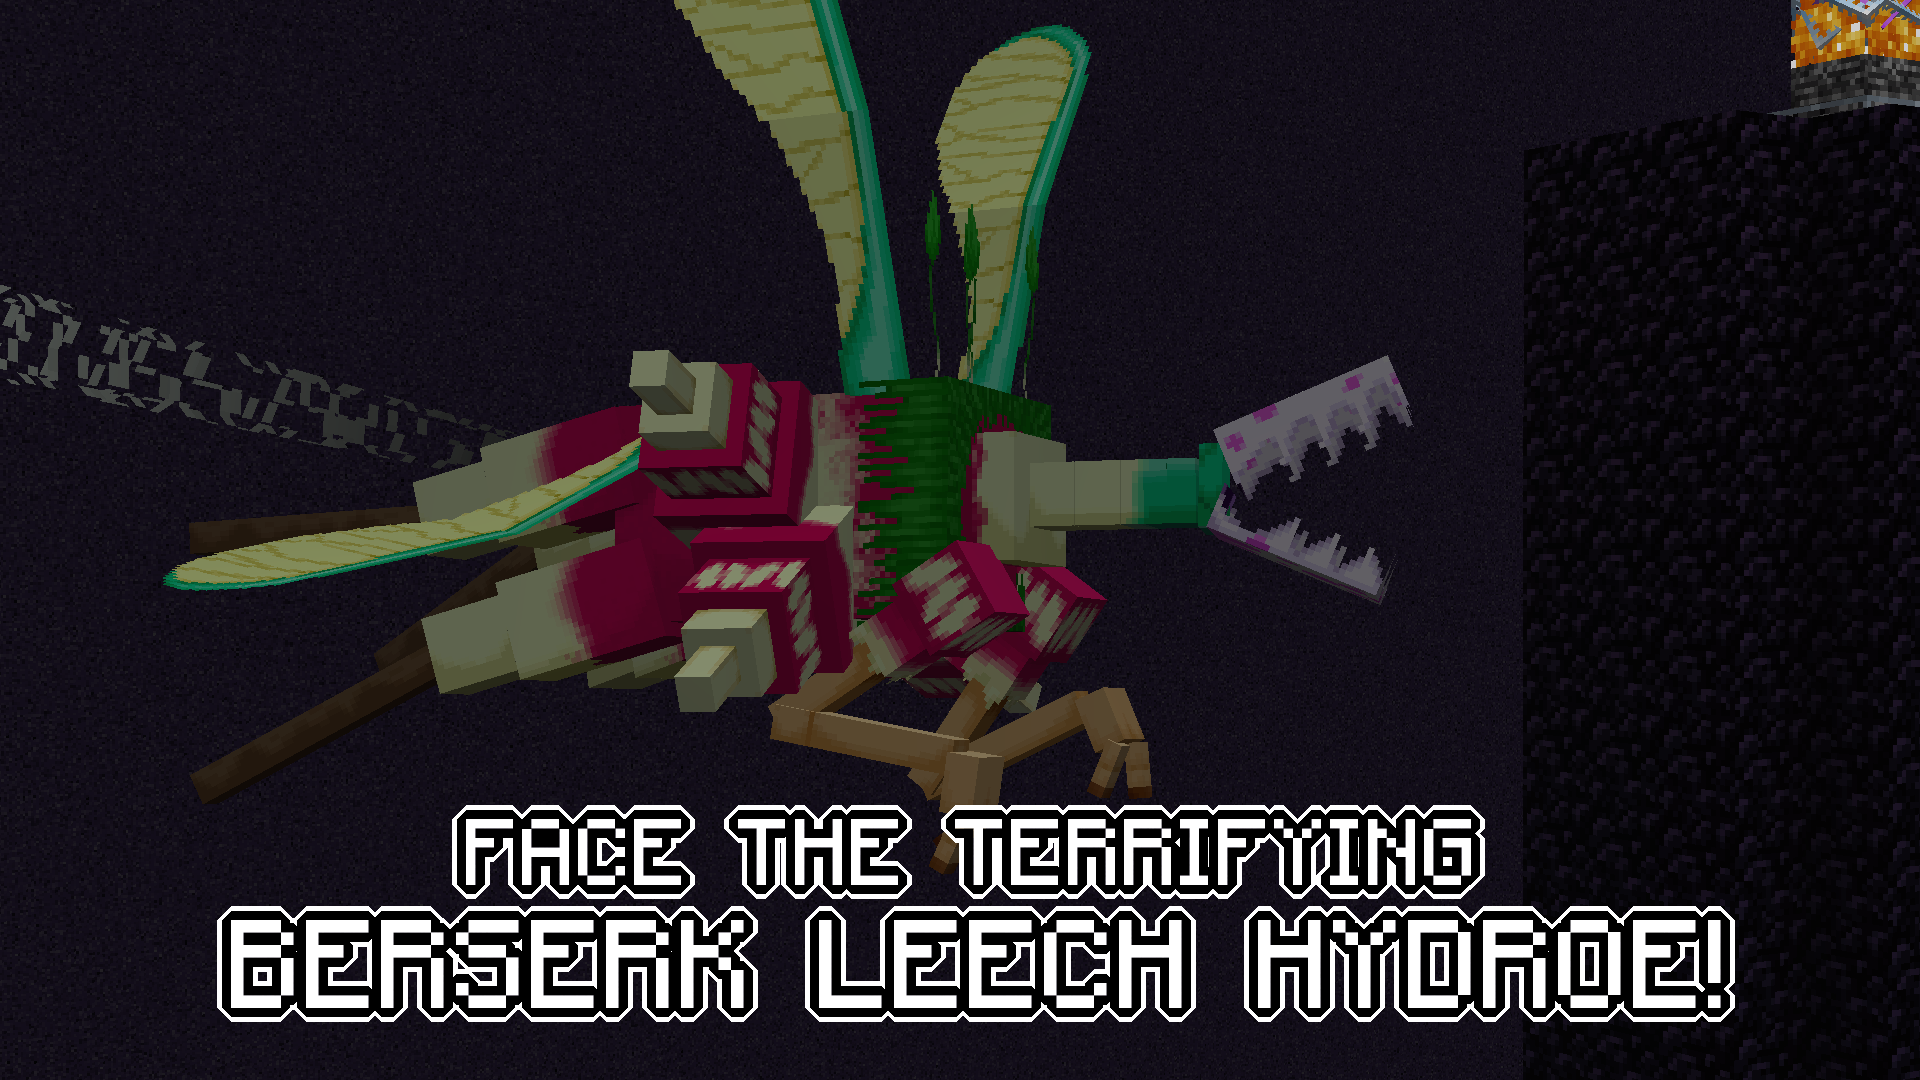 Face the Berserk Leech Hydroe!!